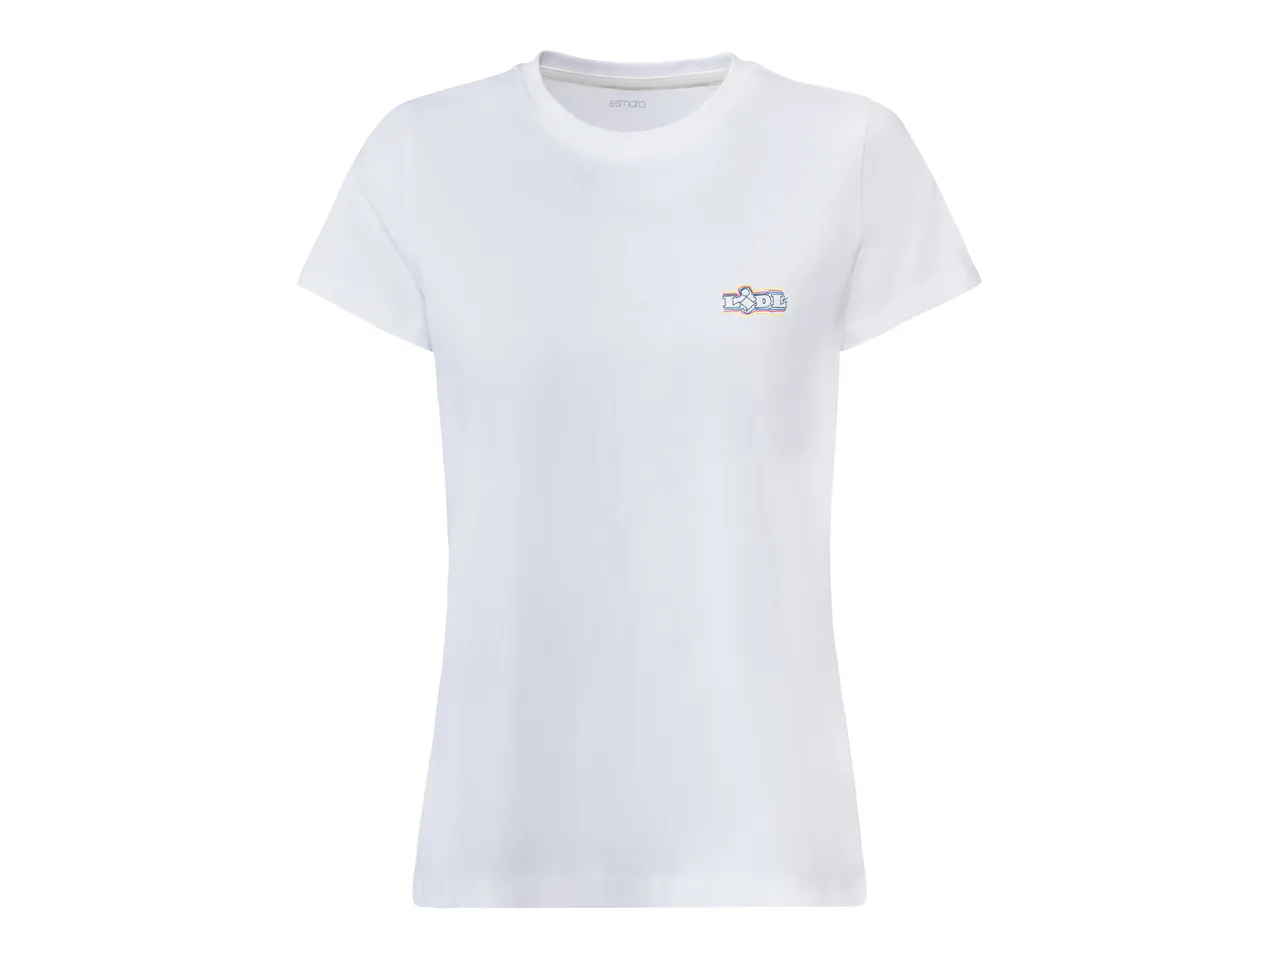 T-shirt da donna Lidl , prezzo 4.99 EUR 
T-shirt da donna 